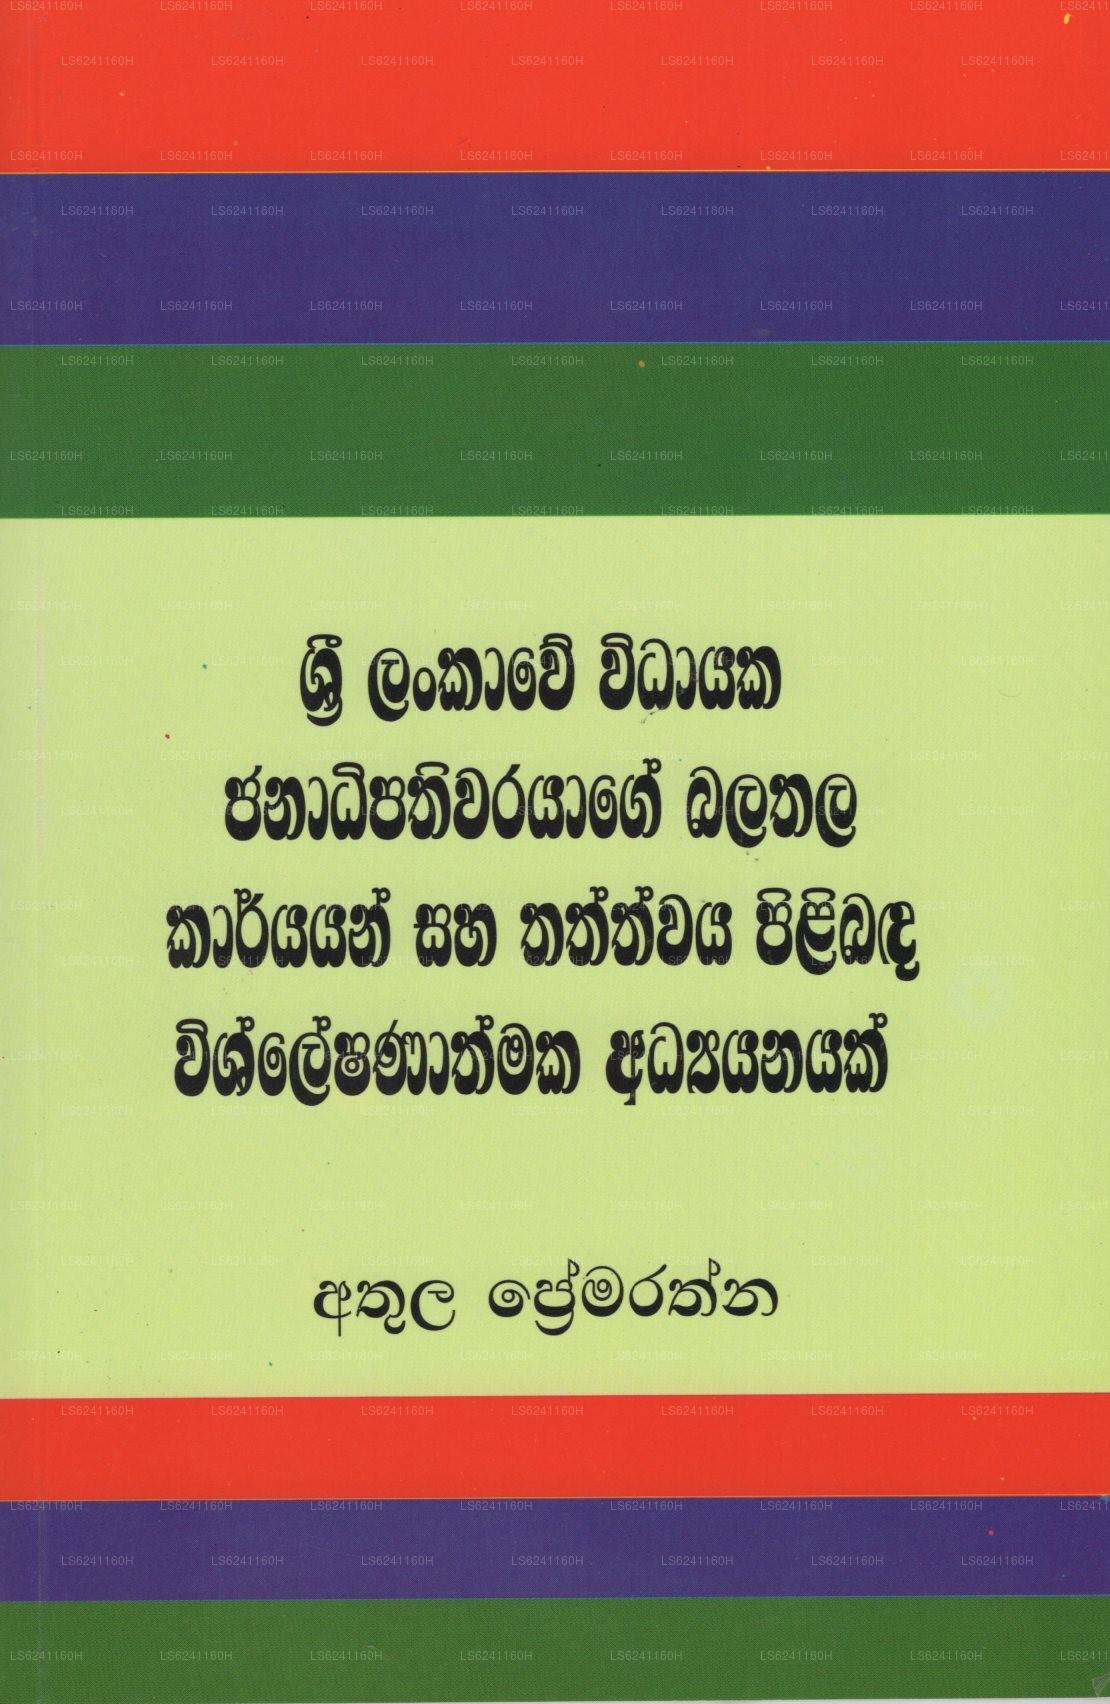 Sri Lankawe Widayaka Janadipathiwarayage Balathala Karyayan Saha Thathwaya Pilibada Wishleshanathmak